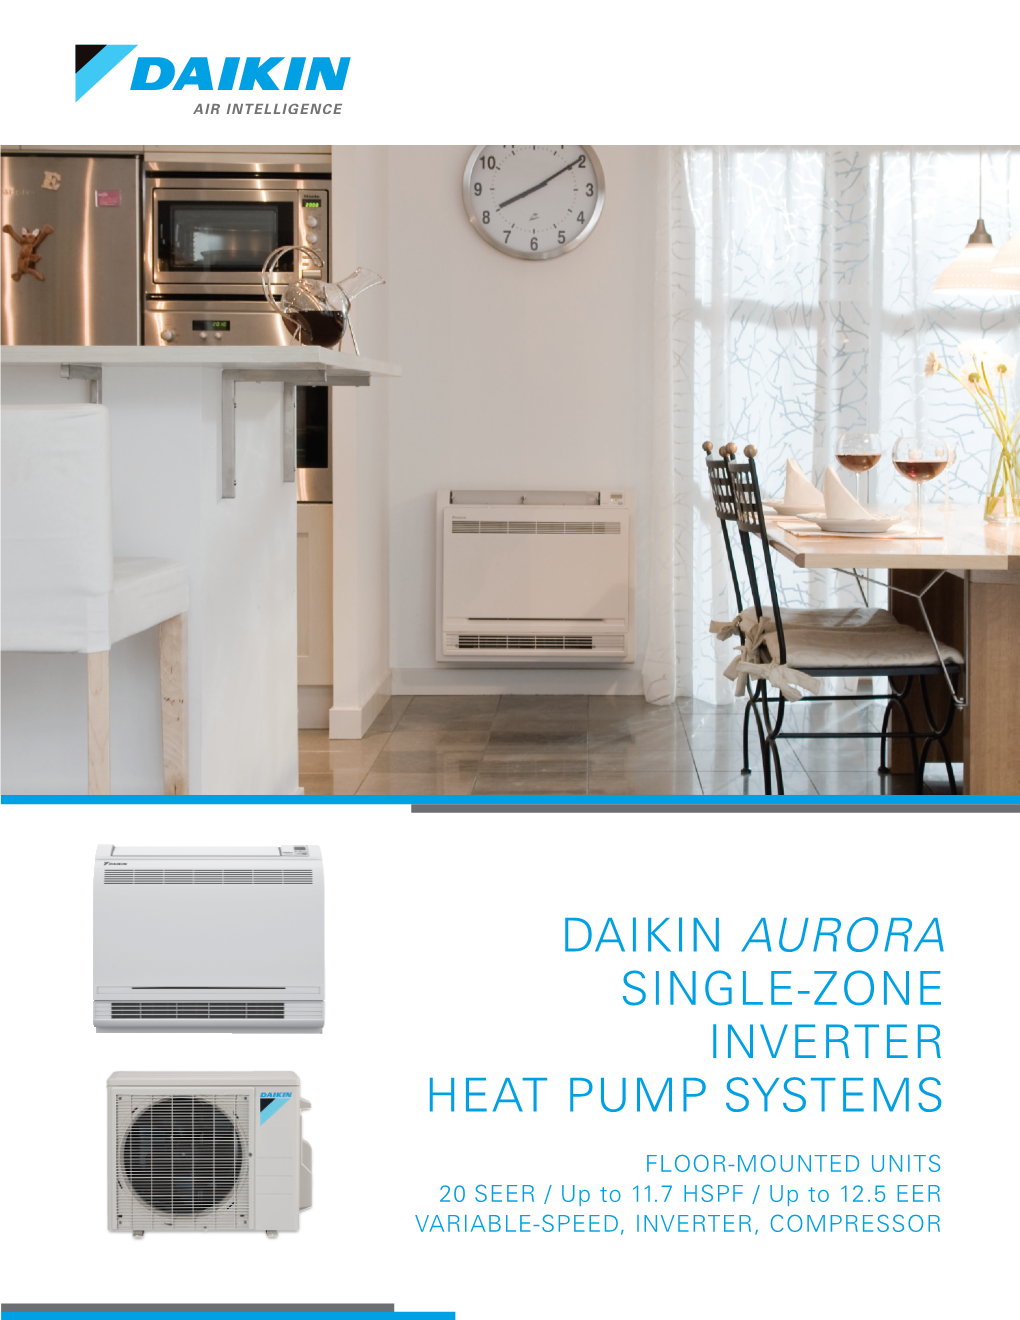 Daikin Aurora Single-Zone Inverter Heat Pump Systems